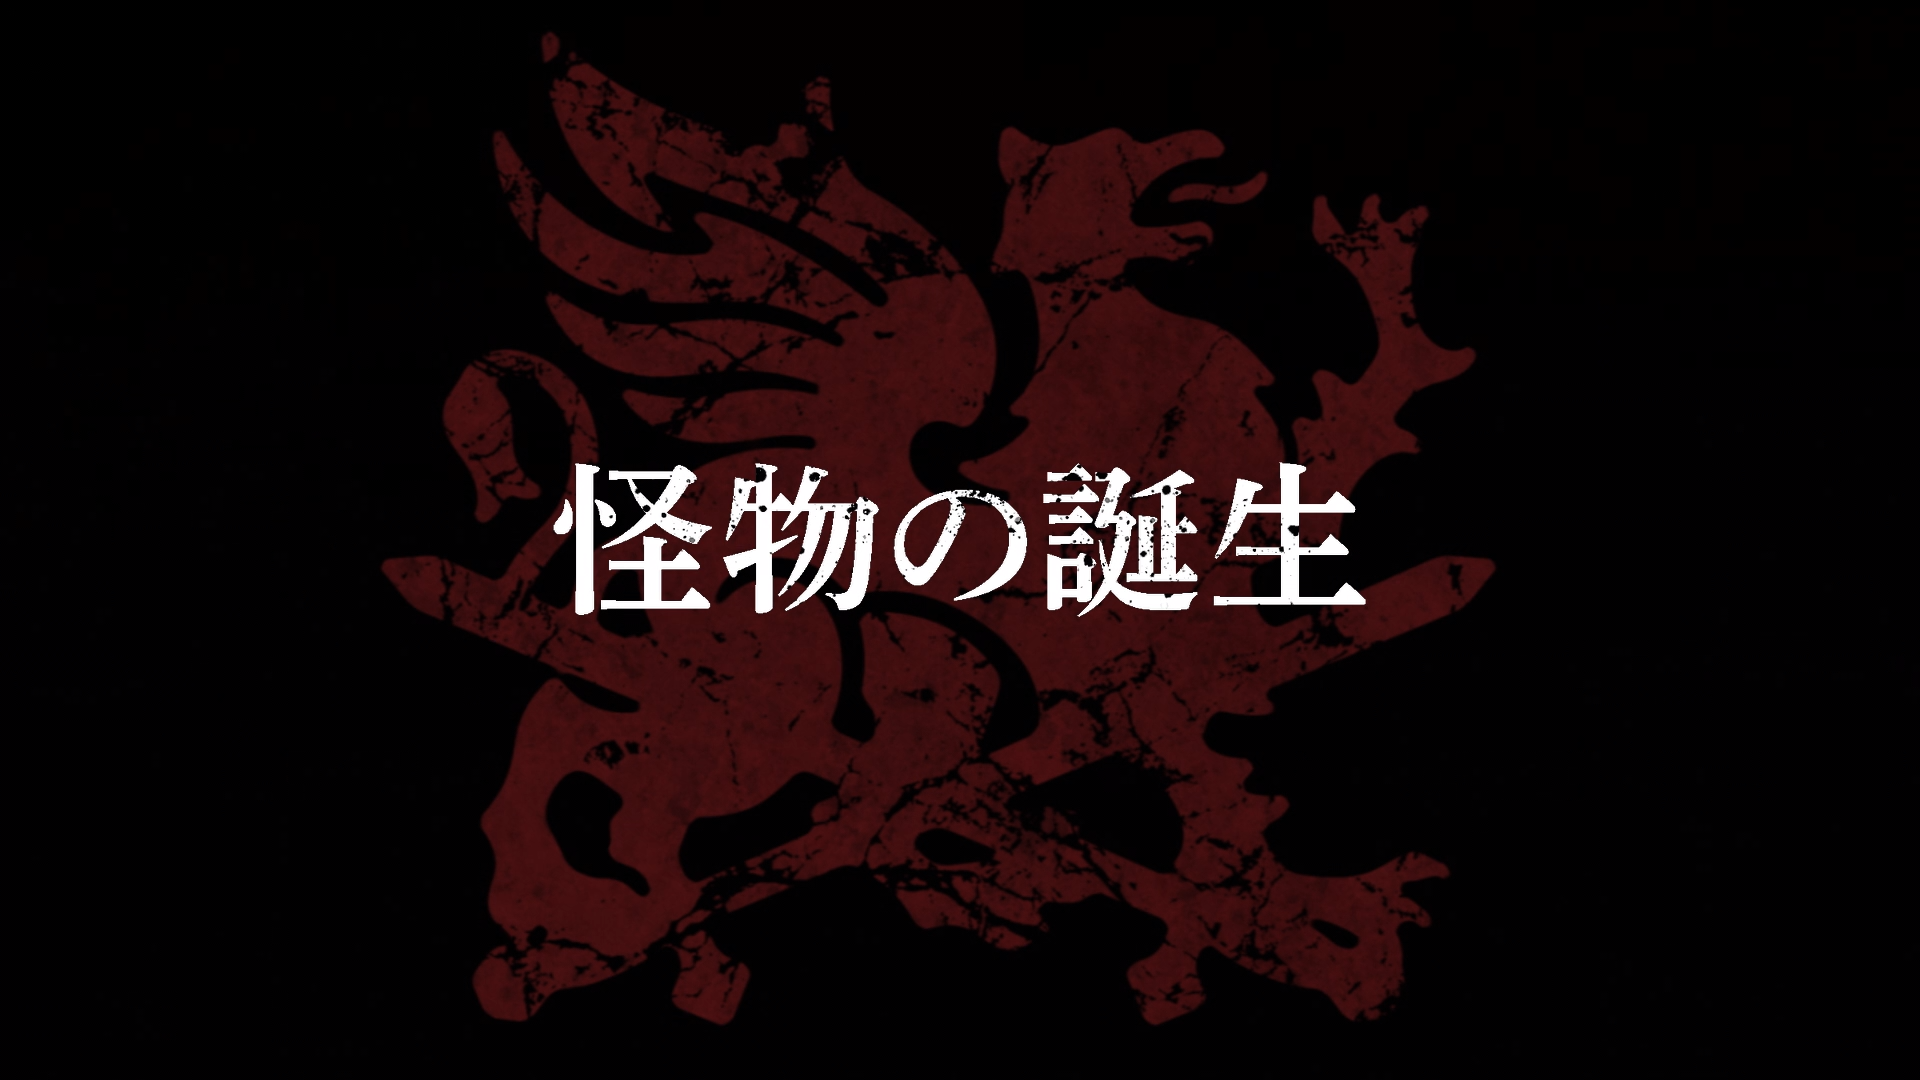 EPISÓDIO FINAL! HAO APARECE - React Record of Ragnarok EP. 15 Temp. 2 ( Shuumatsu no Valkyrie) 